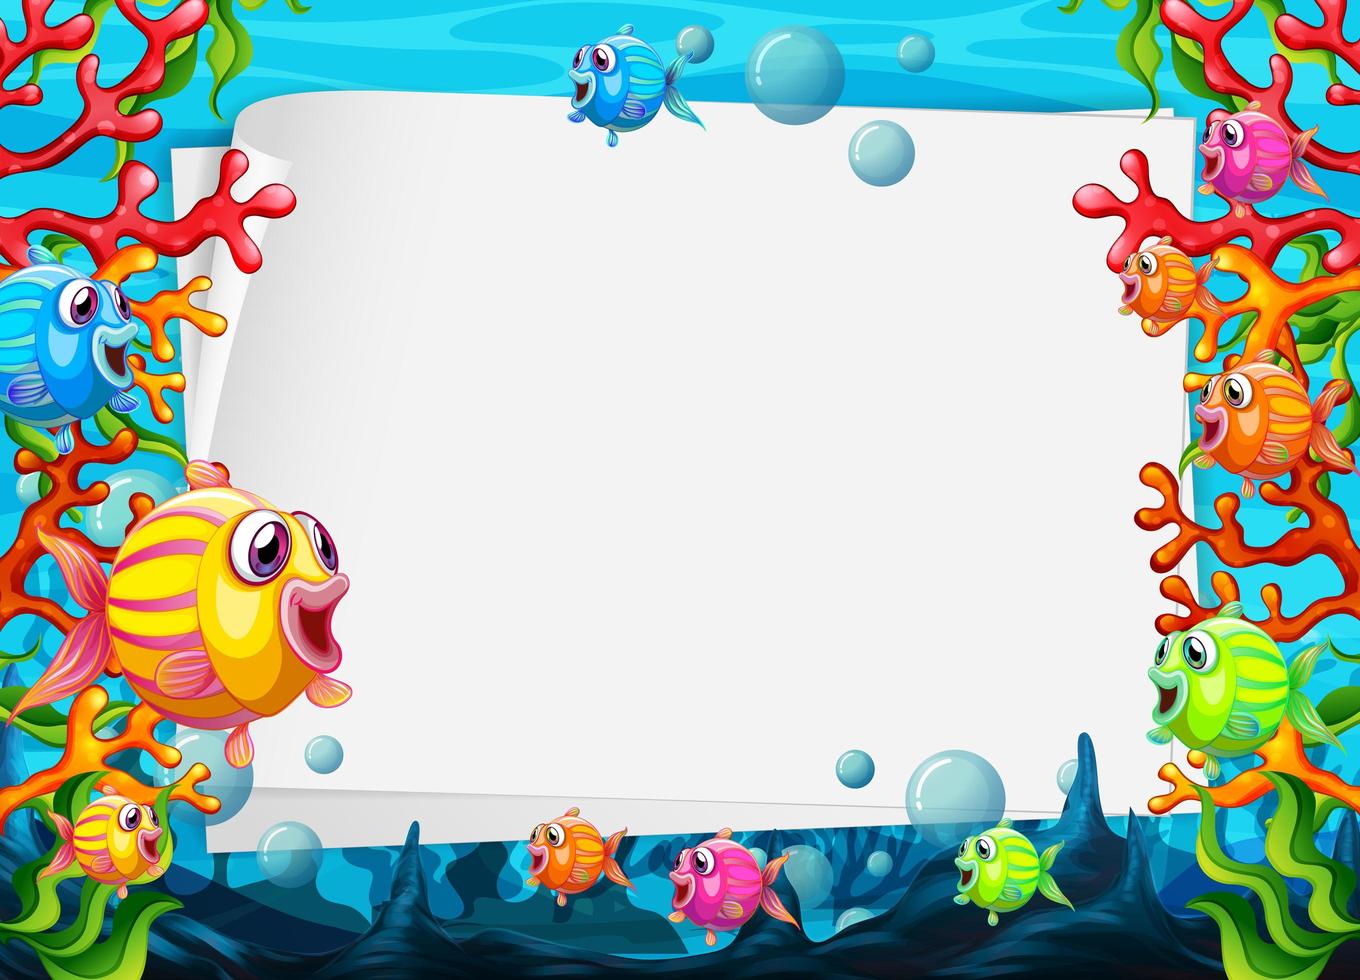 Plantilla de papel en blanco con coloridos peces exóticos personaje de dibujos animados en la escena submarina vector